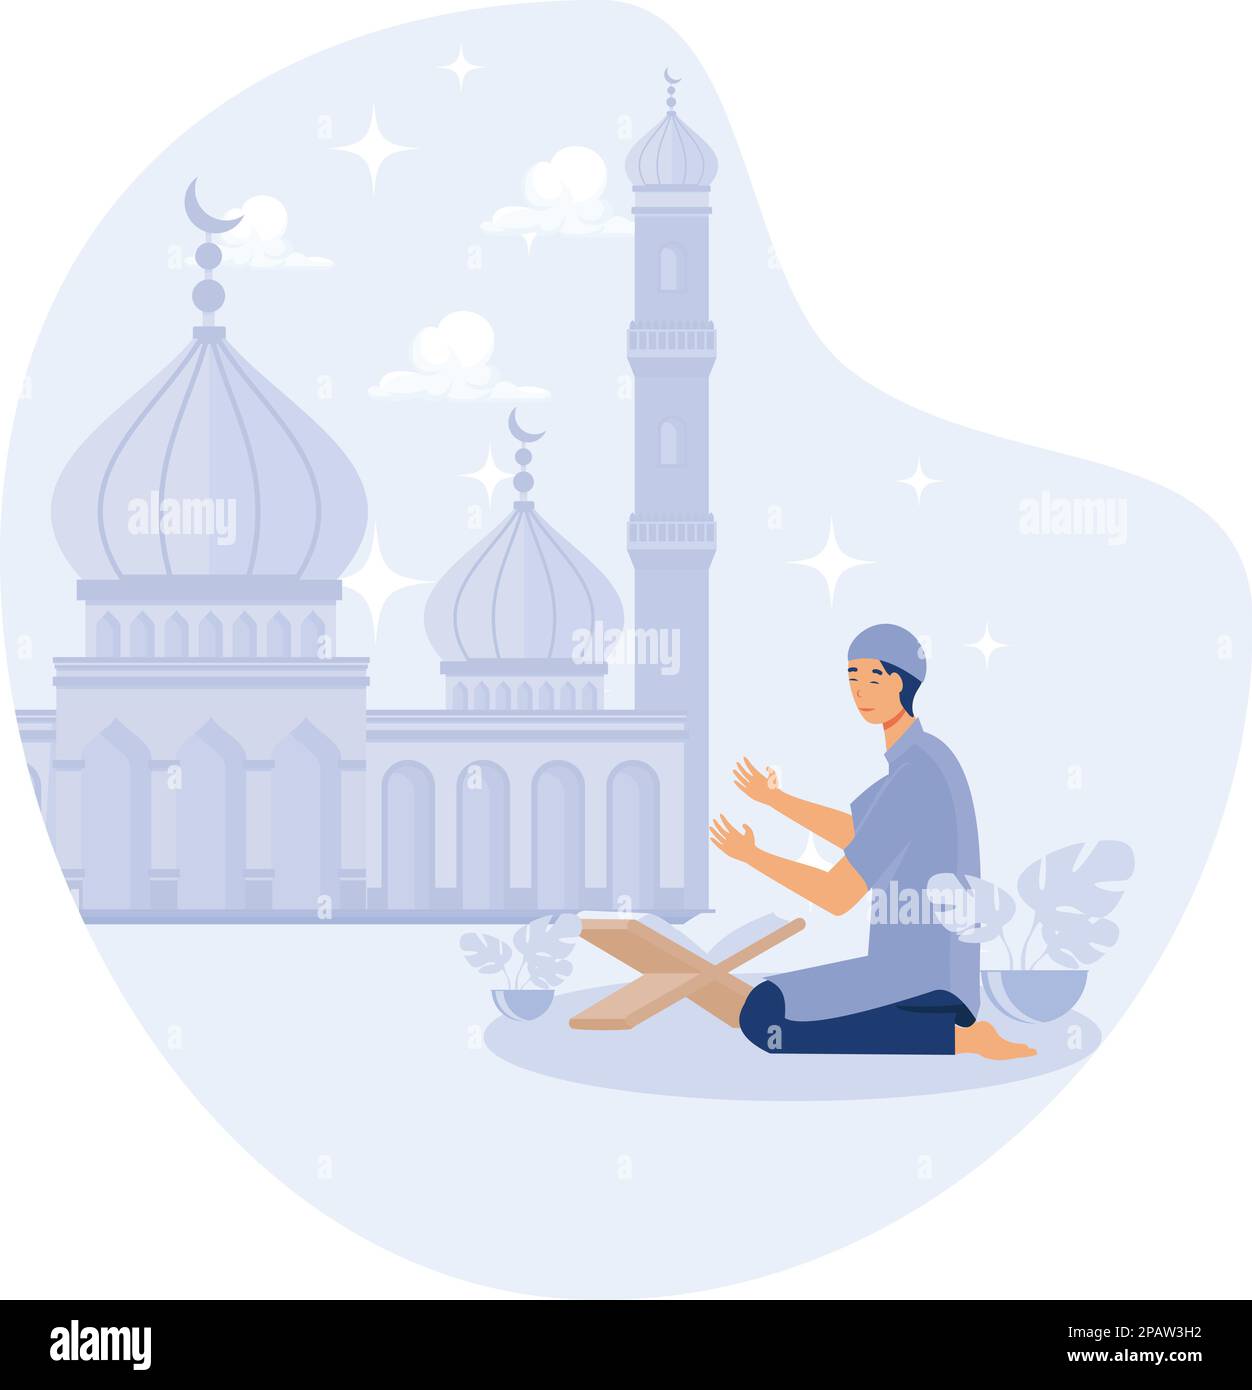 Les musulmans prient dans la mosquée, ramadan kareem, illustration moderne à vecteur plat Illustration de Vecteur